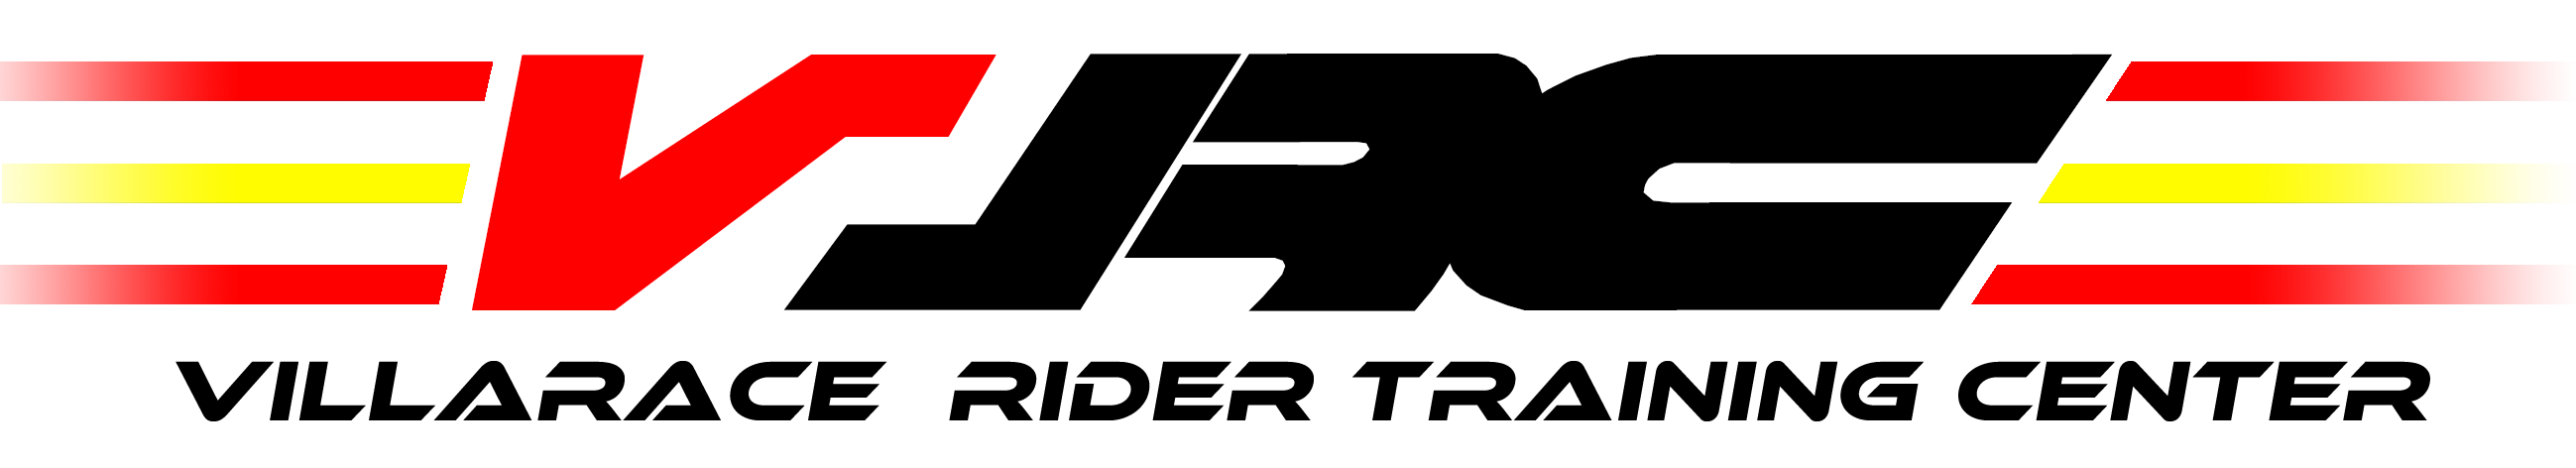 Logo2018_19 Espana